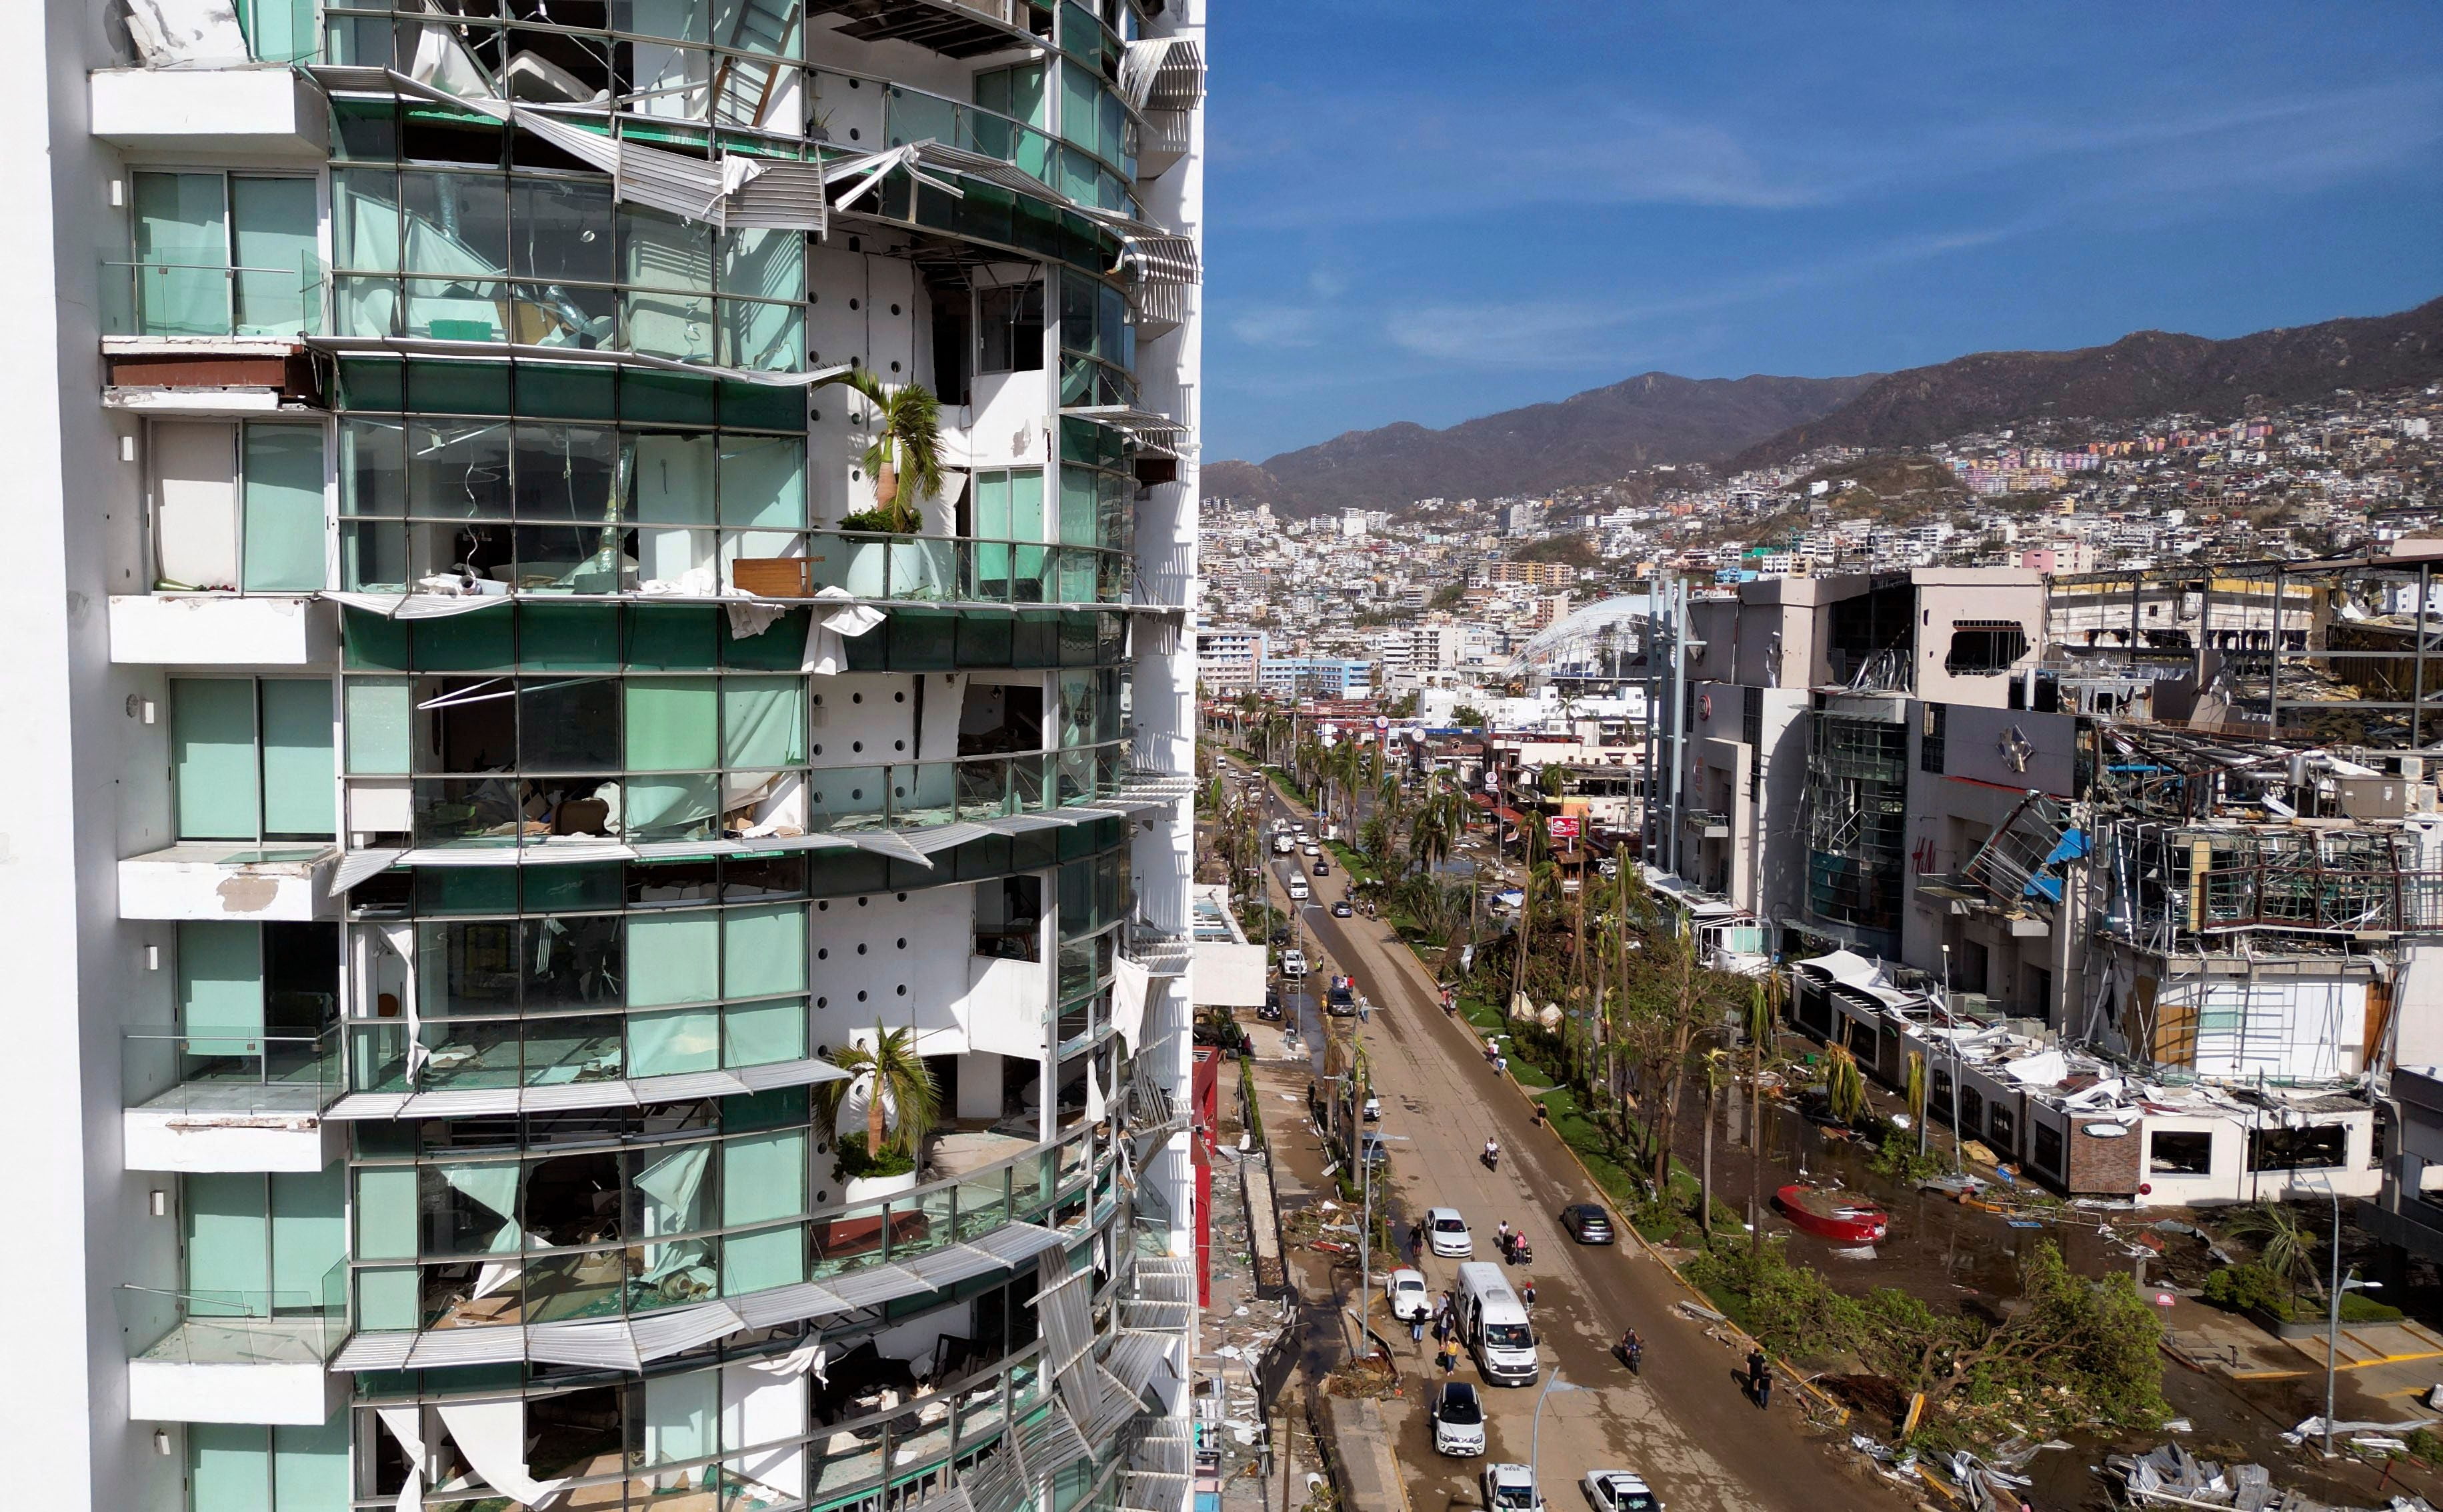  허리케인으로 파손된 멕시코 휴양지 건물 /사진=연합뉴스(AFP)